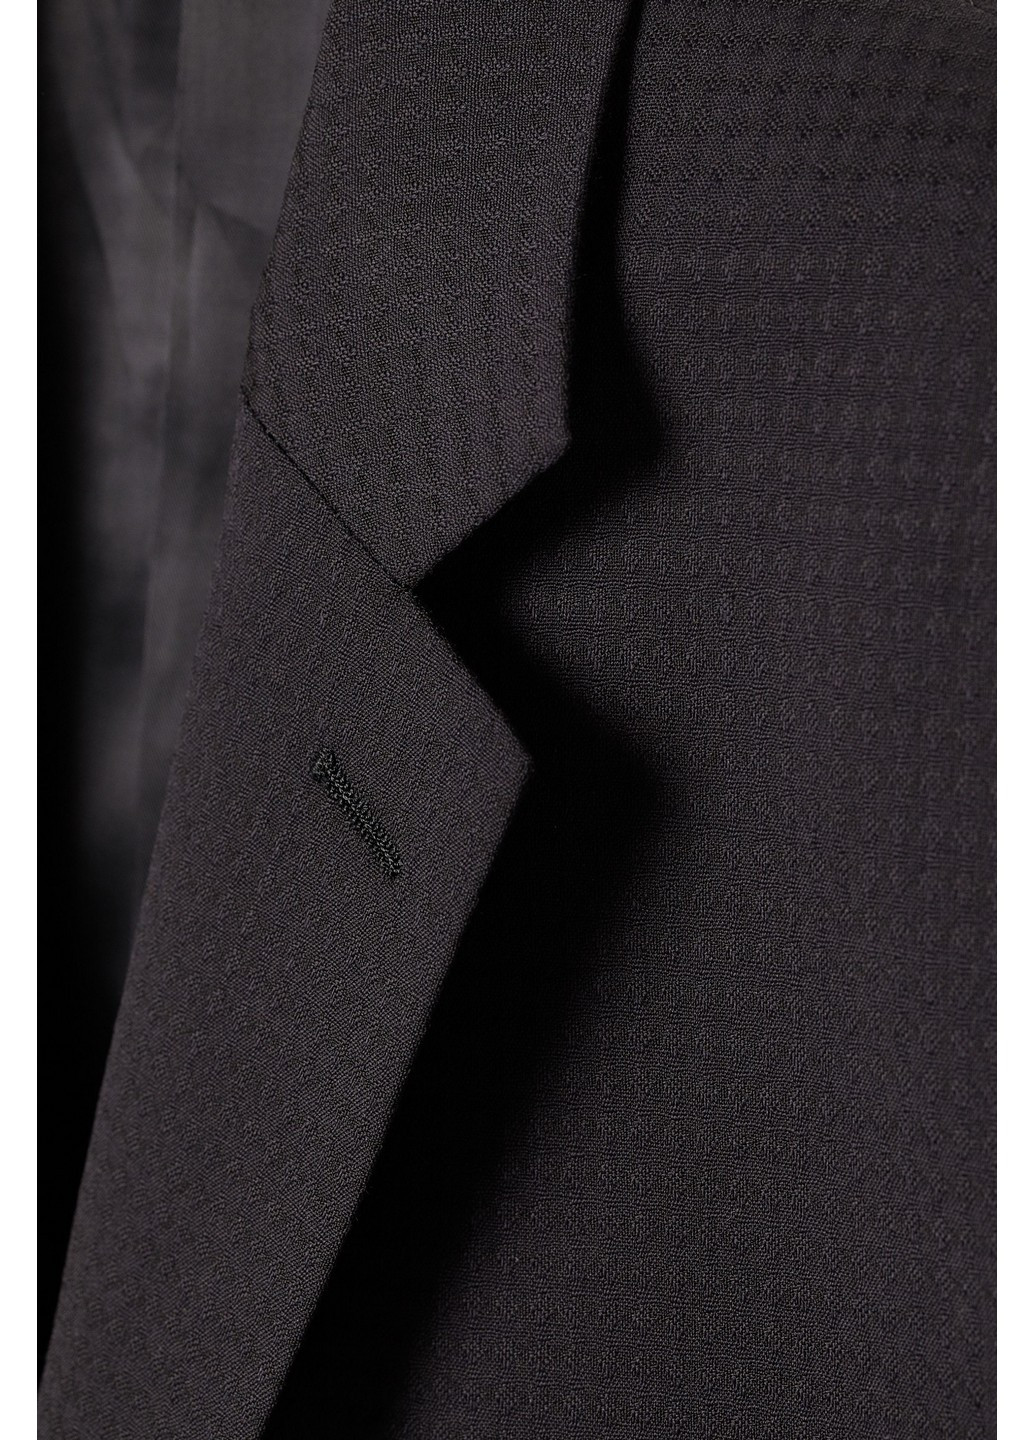 Пиджак H&M однотонный чёрный деловой шерсть